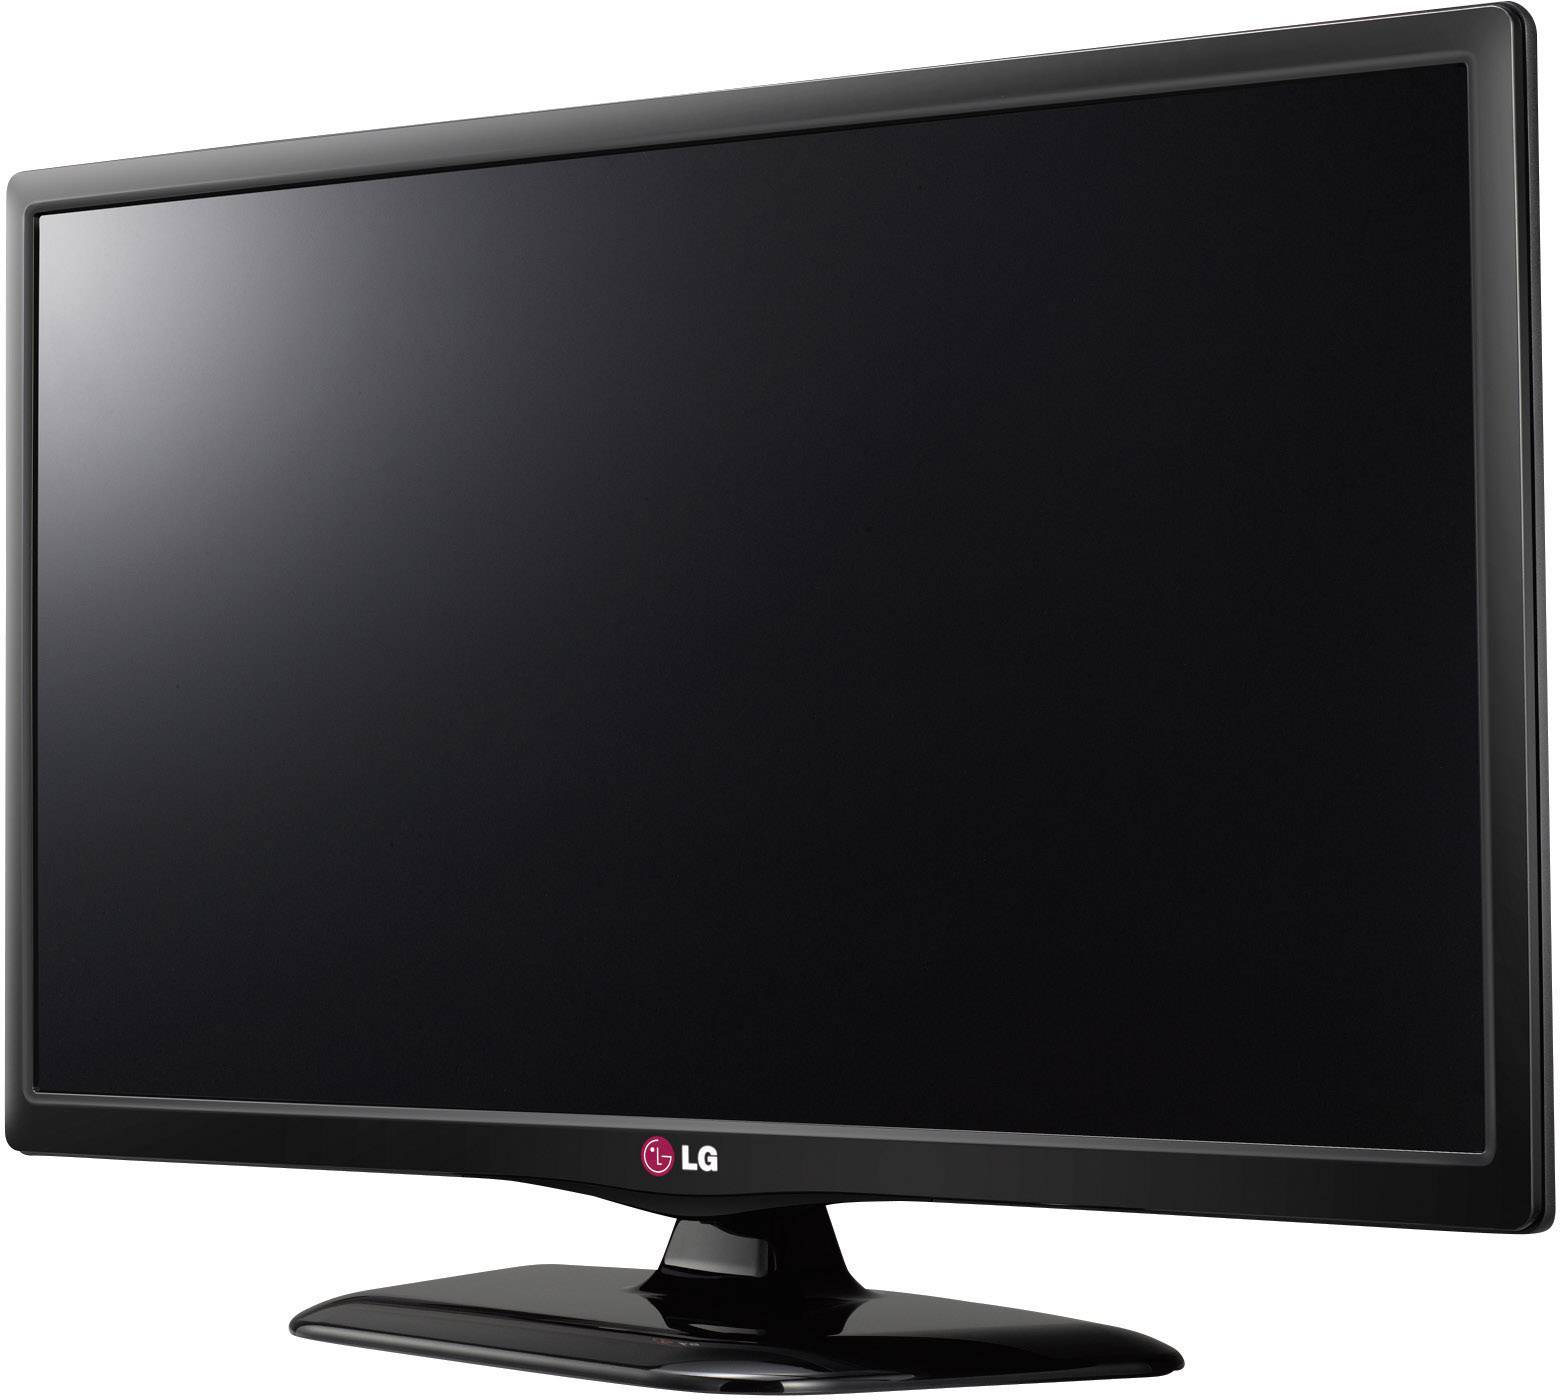 Вес телевизора lg. LG 28lb450u. Телевизор LG 28lb450u. Телевизор LG 28lb450u 28". Телевизор led 22 LG 22lf450u.